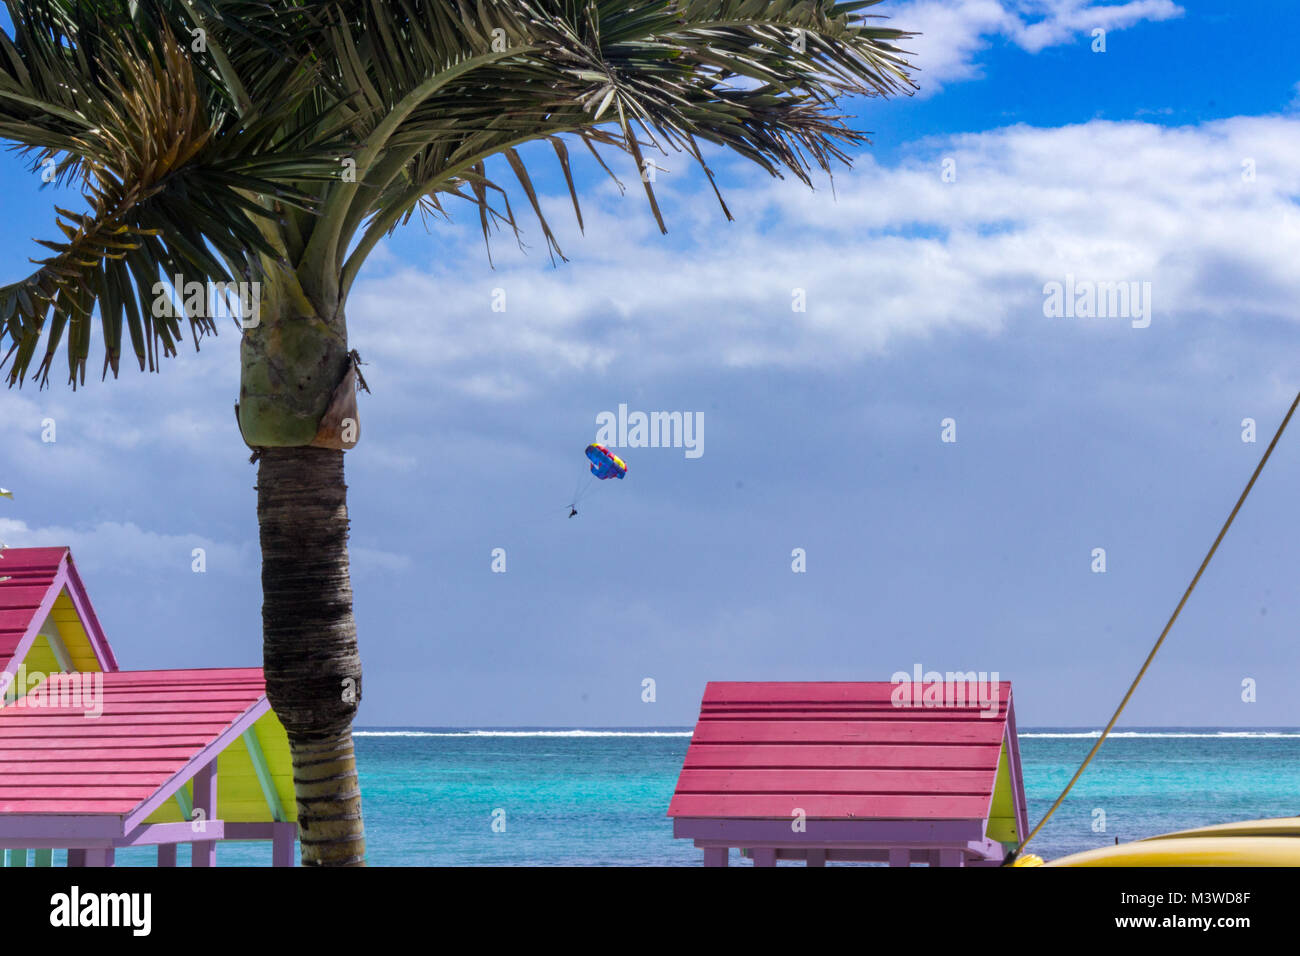 Un parasail galleggianti oltre i tetti colorati di San Pedro accanto al blu e azzurre acque del Mar dei Caraibi al di fuori della costa del Belize. Foto Stock